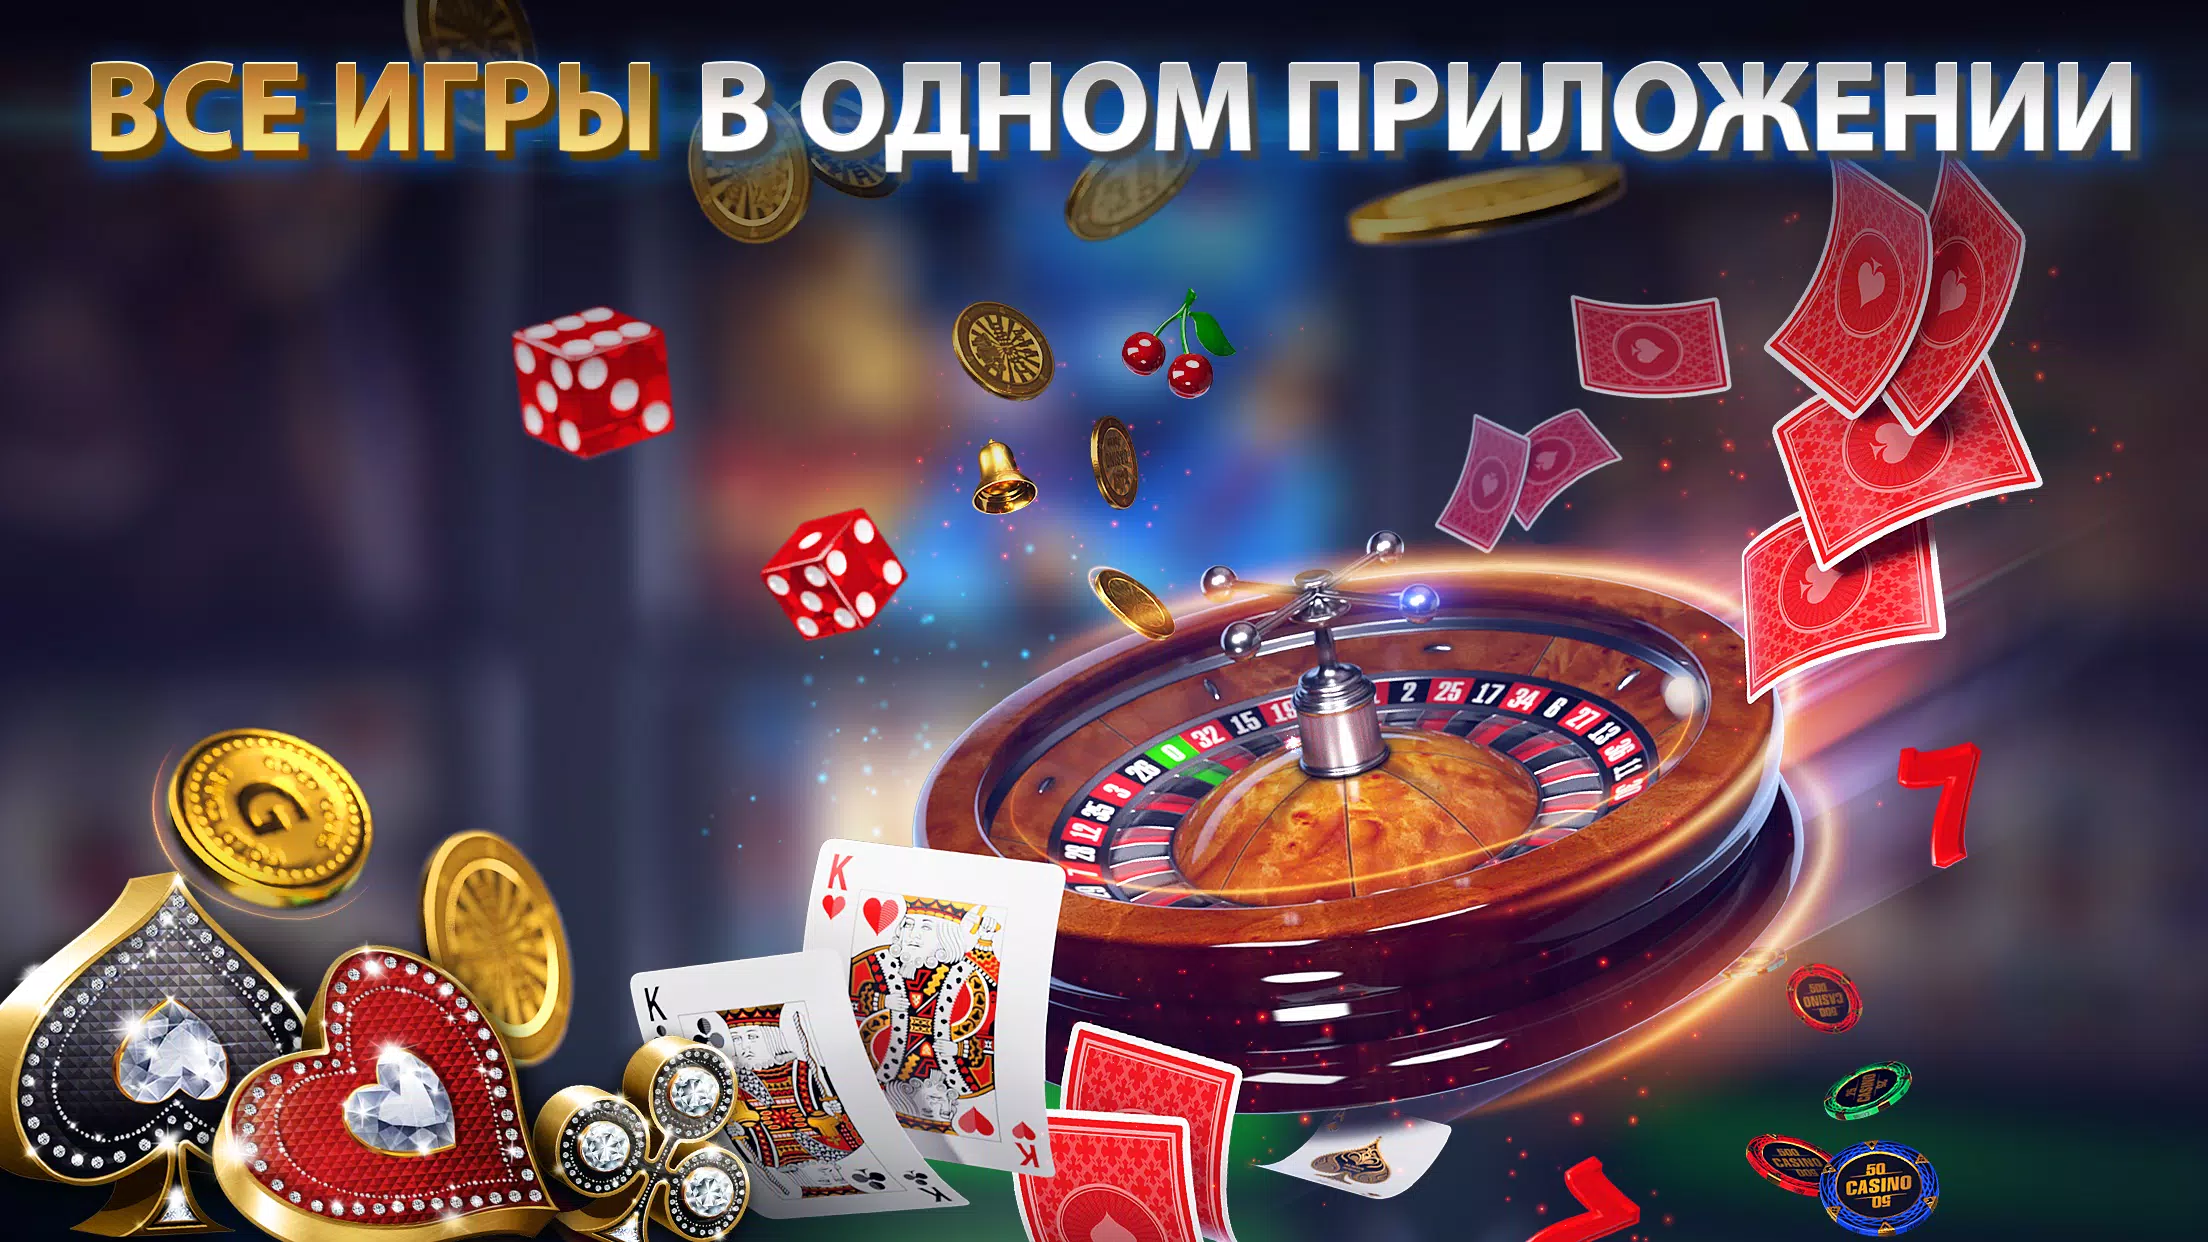 Покер омаха играть онлайн без регистрации отзывы о заработке в онлайн казино